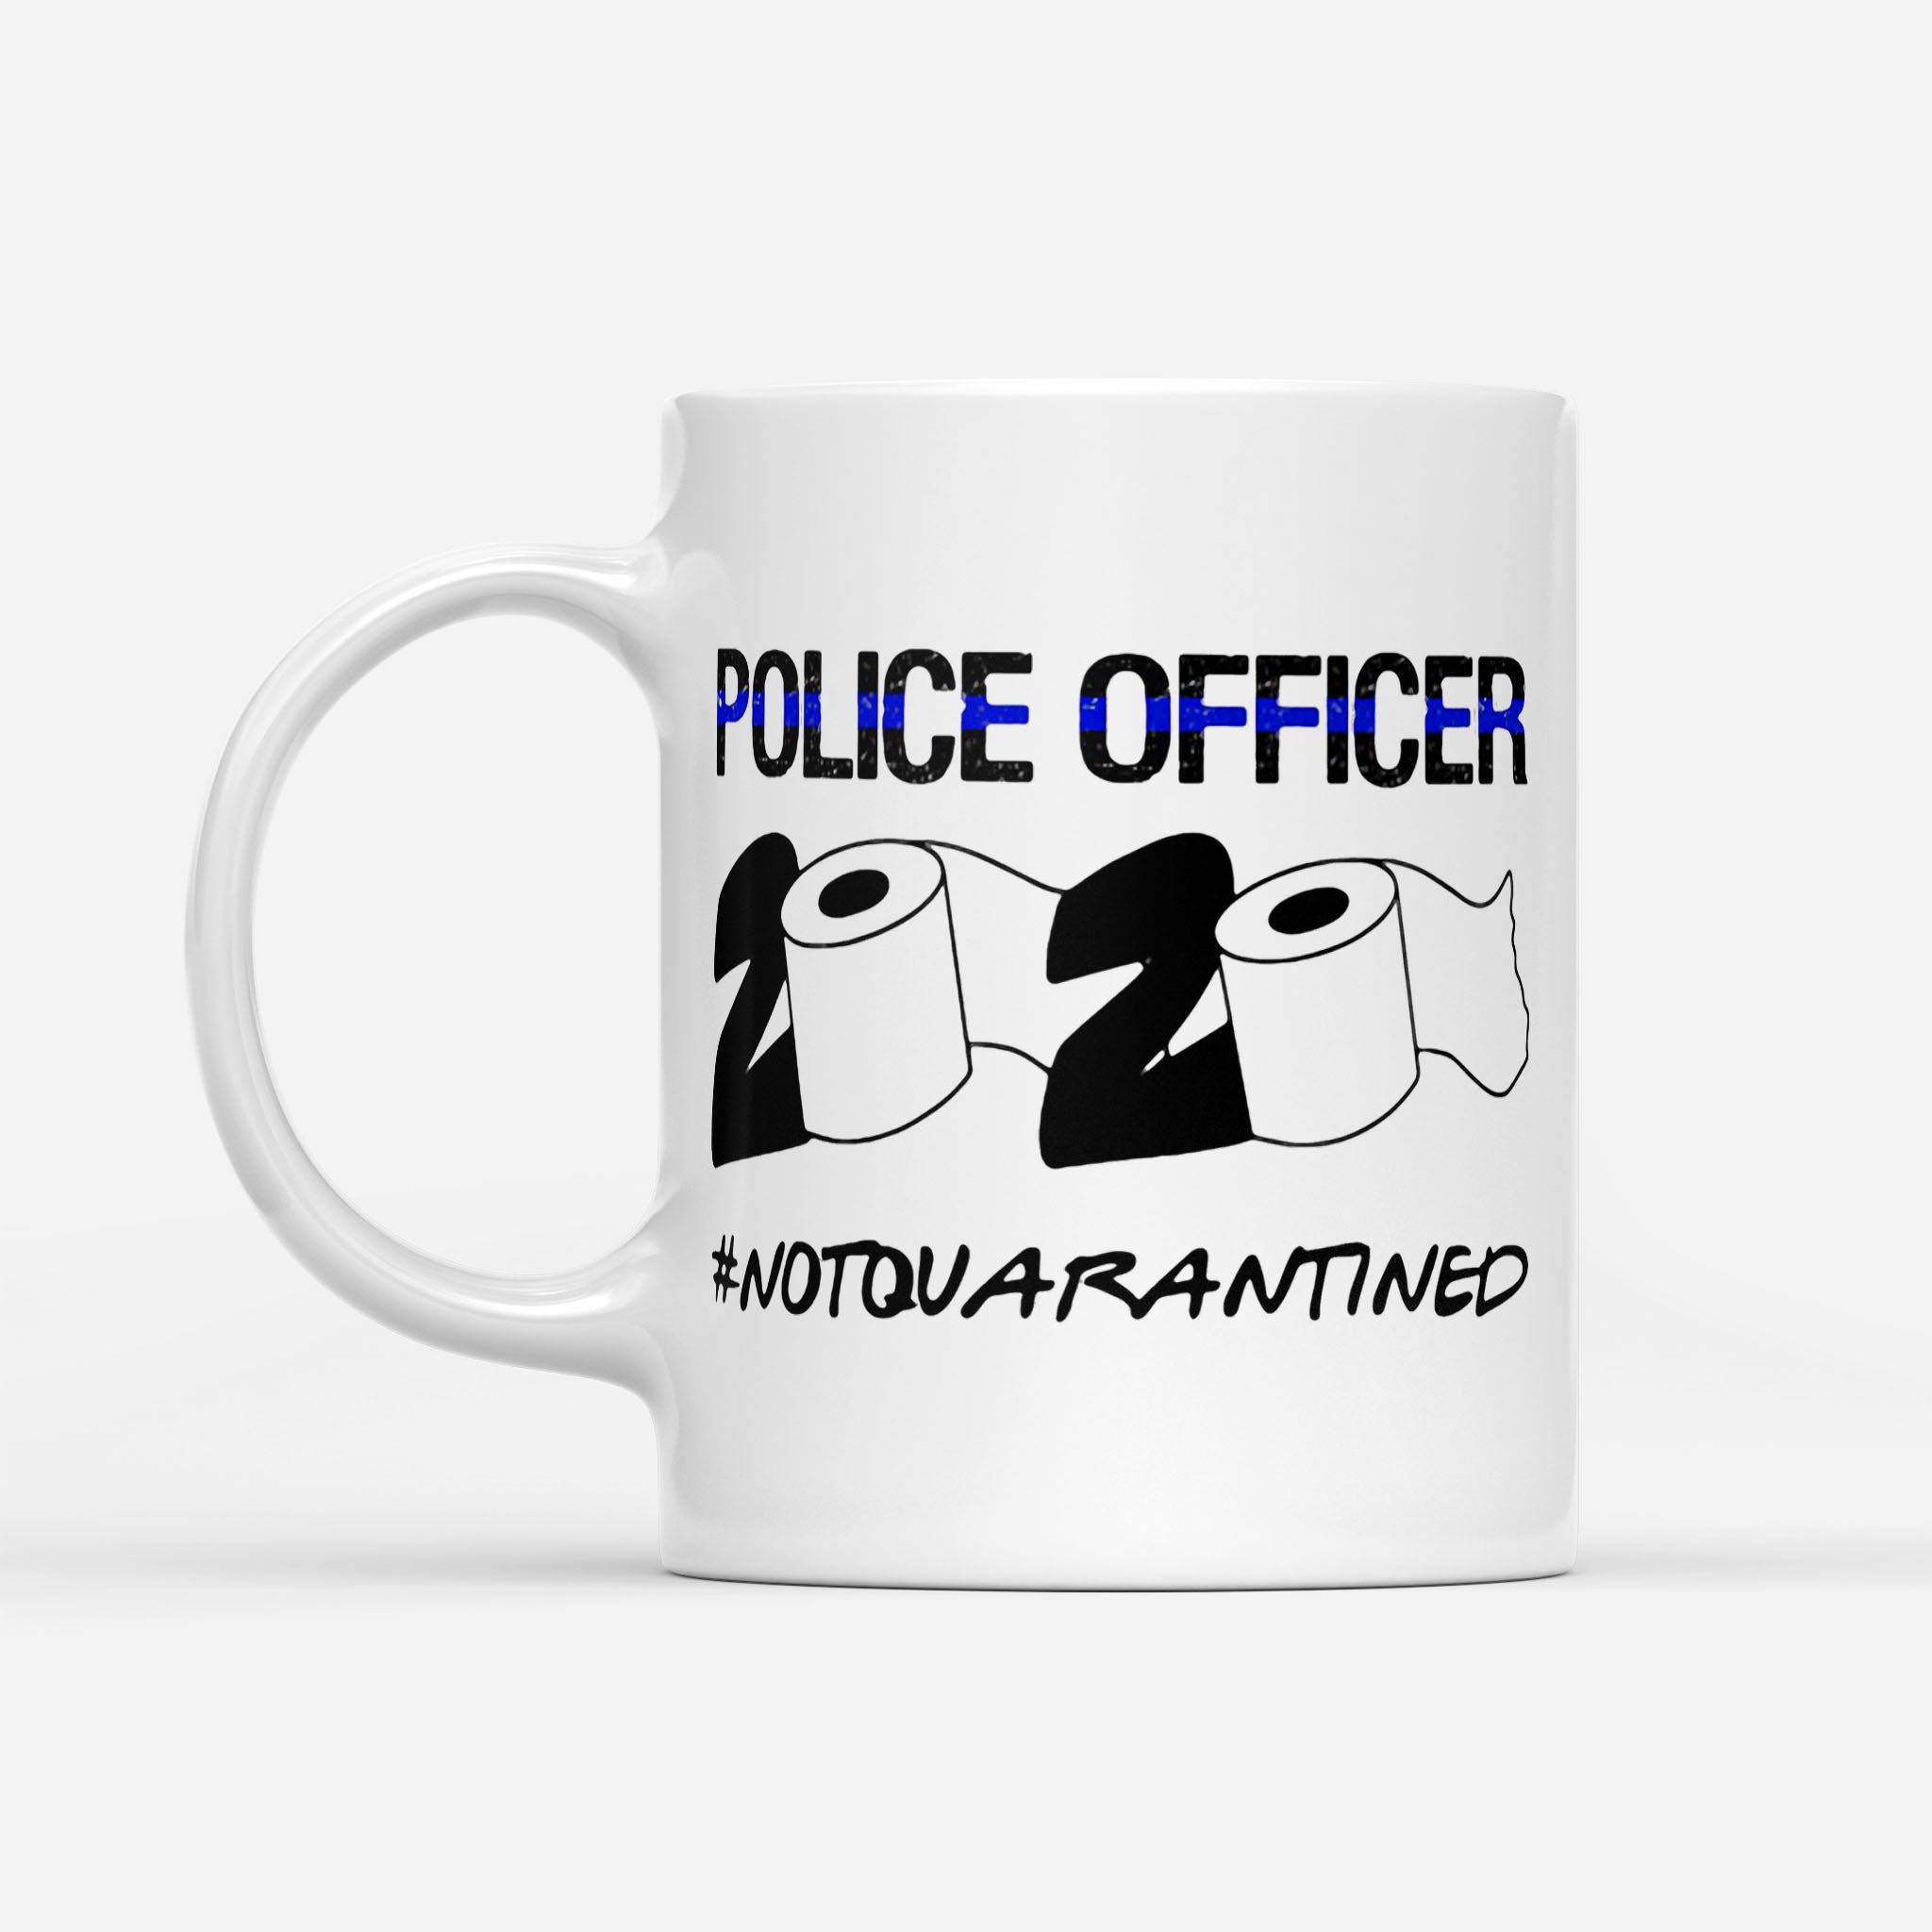 Police Officer 2020 Toilet Paper Not Quarantined - White Mug